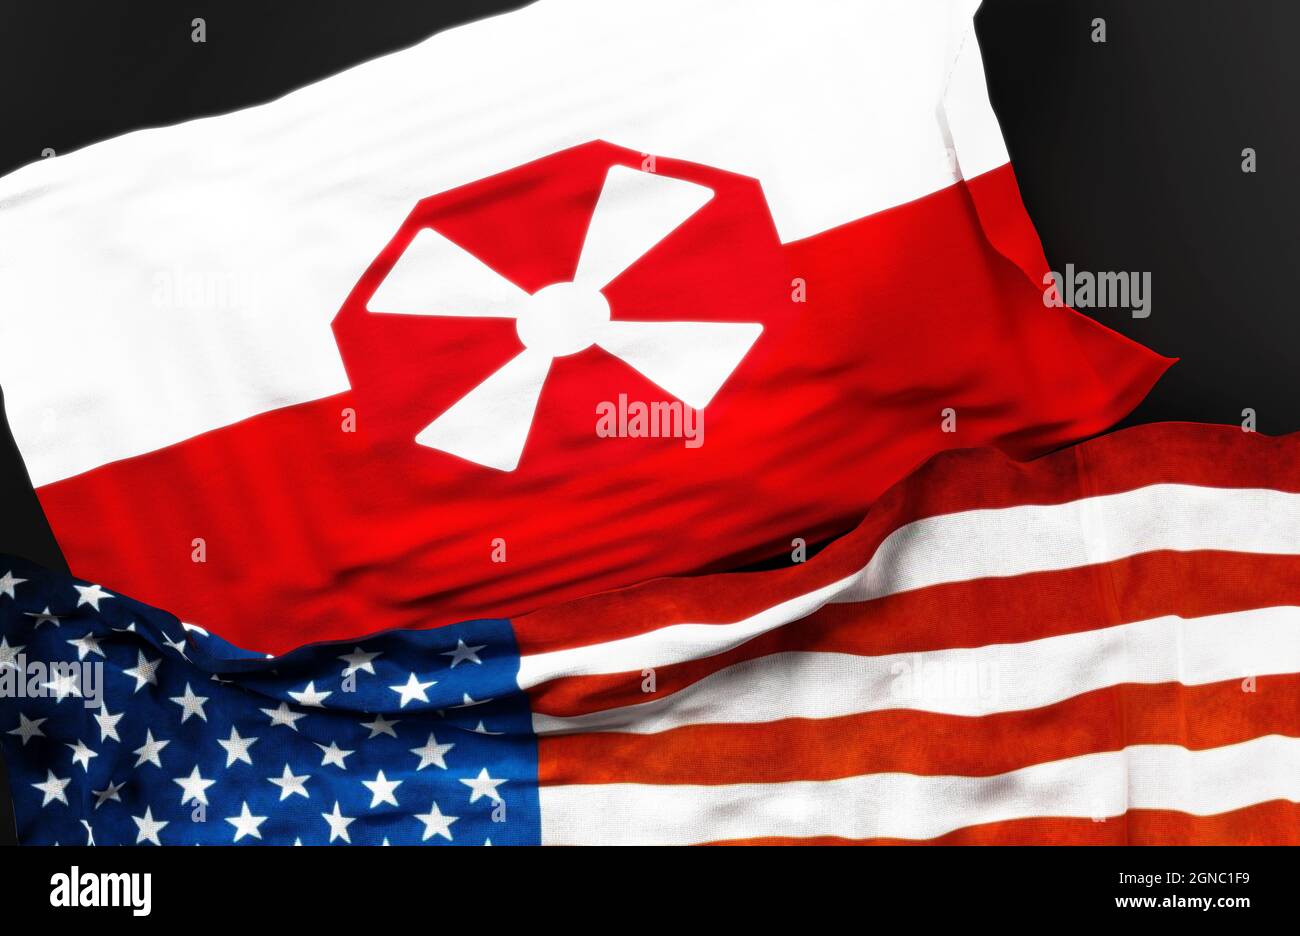 Drapeau de la huitième armée des États-Unis avec un drapeau des États-Unis d'Amérique comme un symbole d'unité entre eux, illustration 3d Banque D'Images